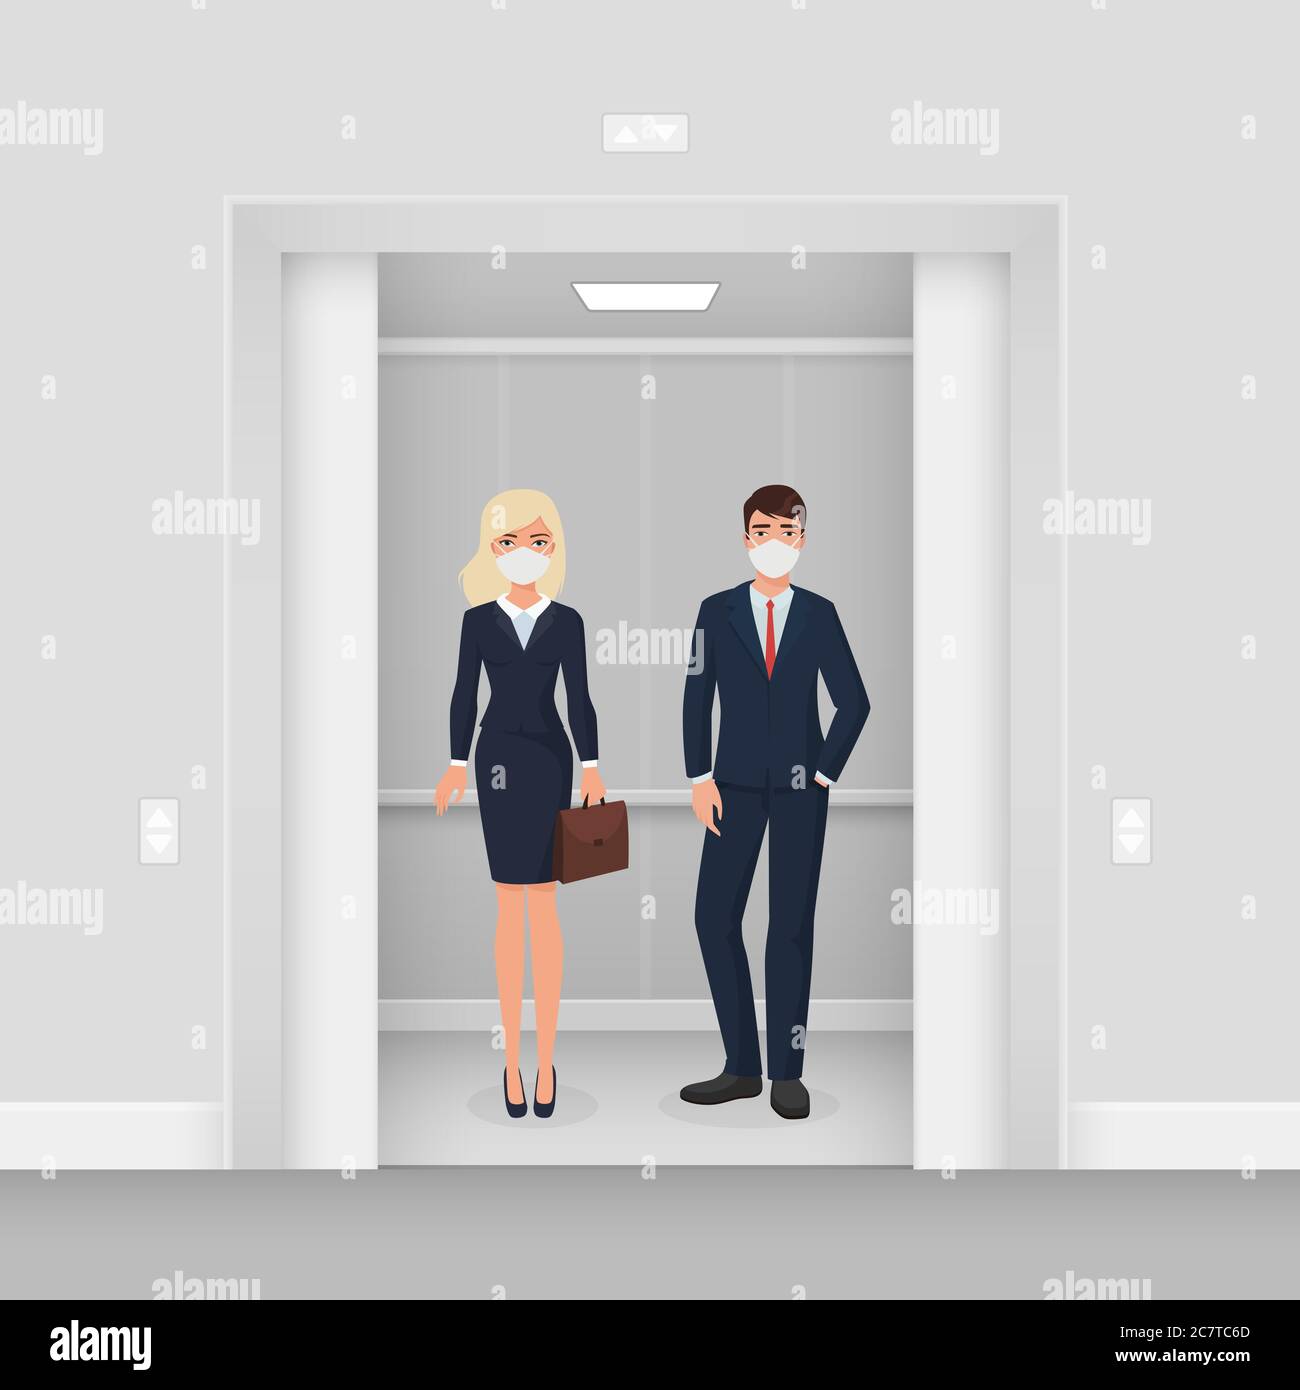 Geschäftsleute in Masken in Aufzug Charakter flach Cartoon Vektor Illustration Konzept. Mann und Frau in formeller Kleidung mit Masken in beleuchteten Aufzug mit geöffneter Tür. Abstand beibehalten Stock Vektor